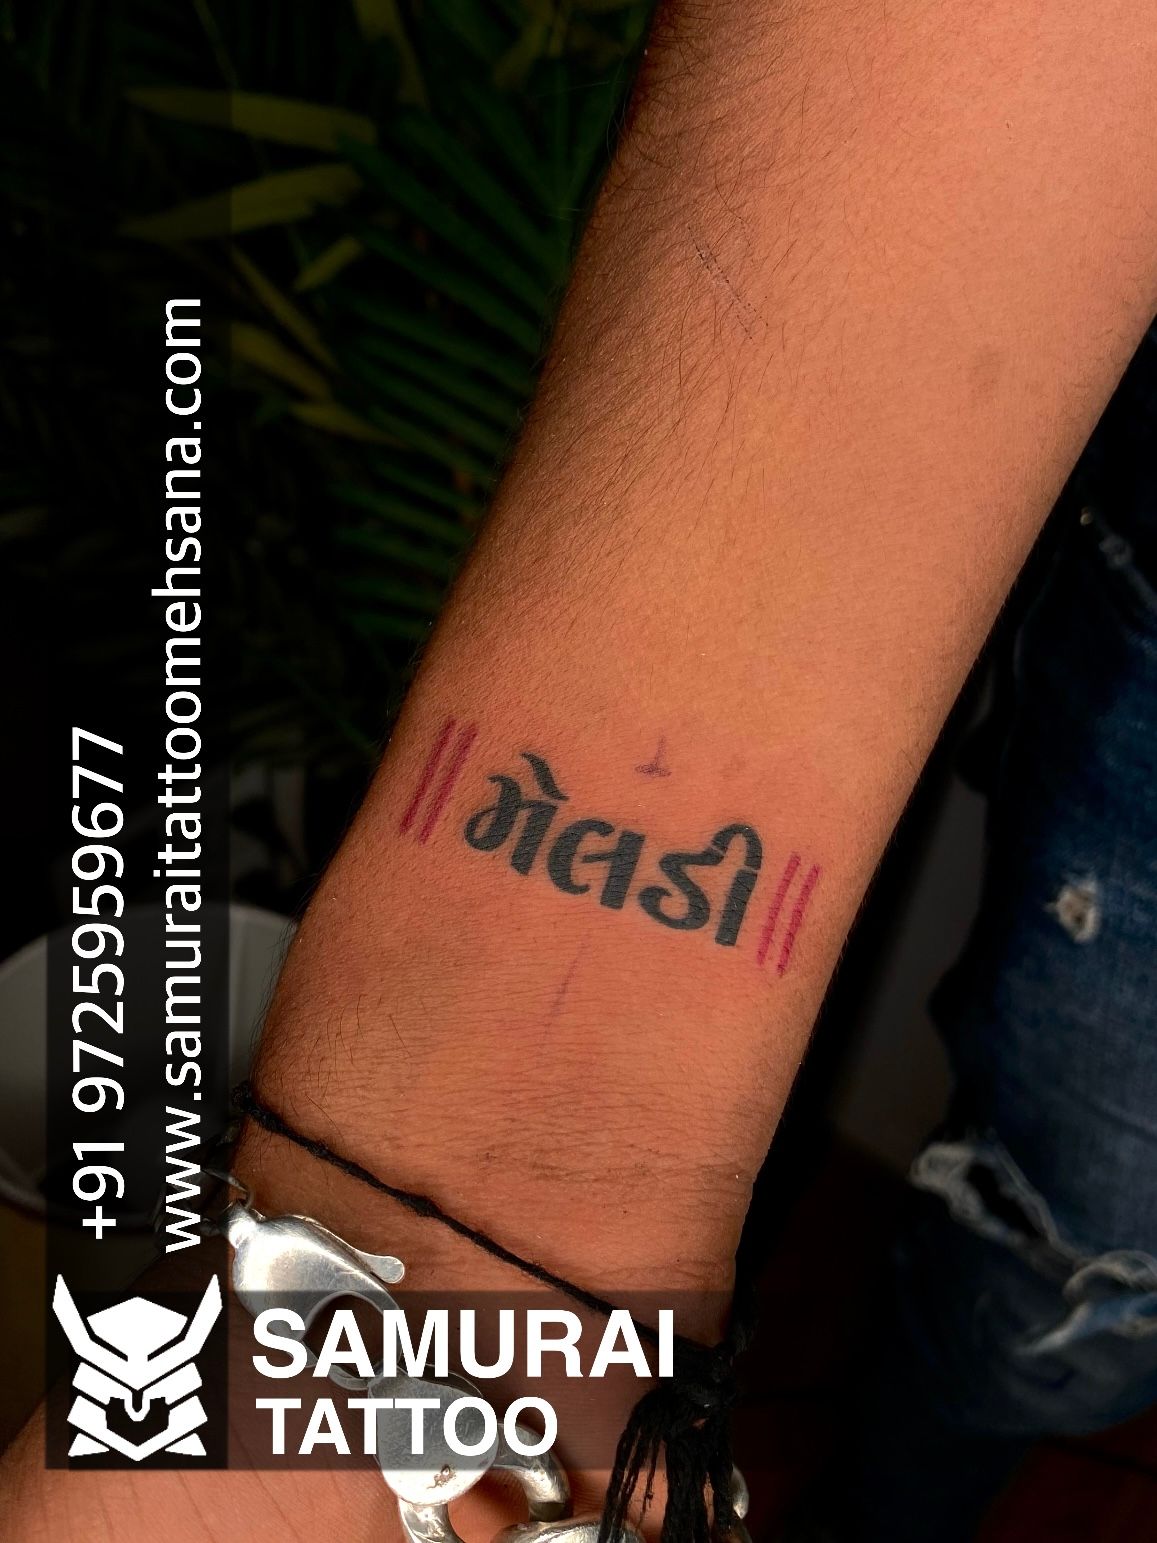 samurai tattoo mehsana on Twitter Meldi Maa tattoo made by  samuraitattoomehsana samuraitattoomehsana tattoo tattooideas  Maamelditattoo httpstcofzgVZ0Y1HF  Twitter